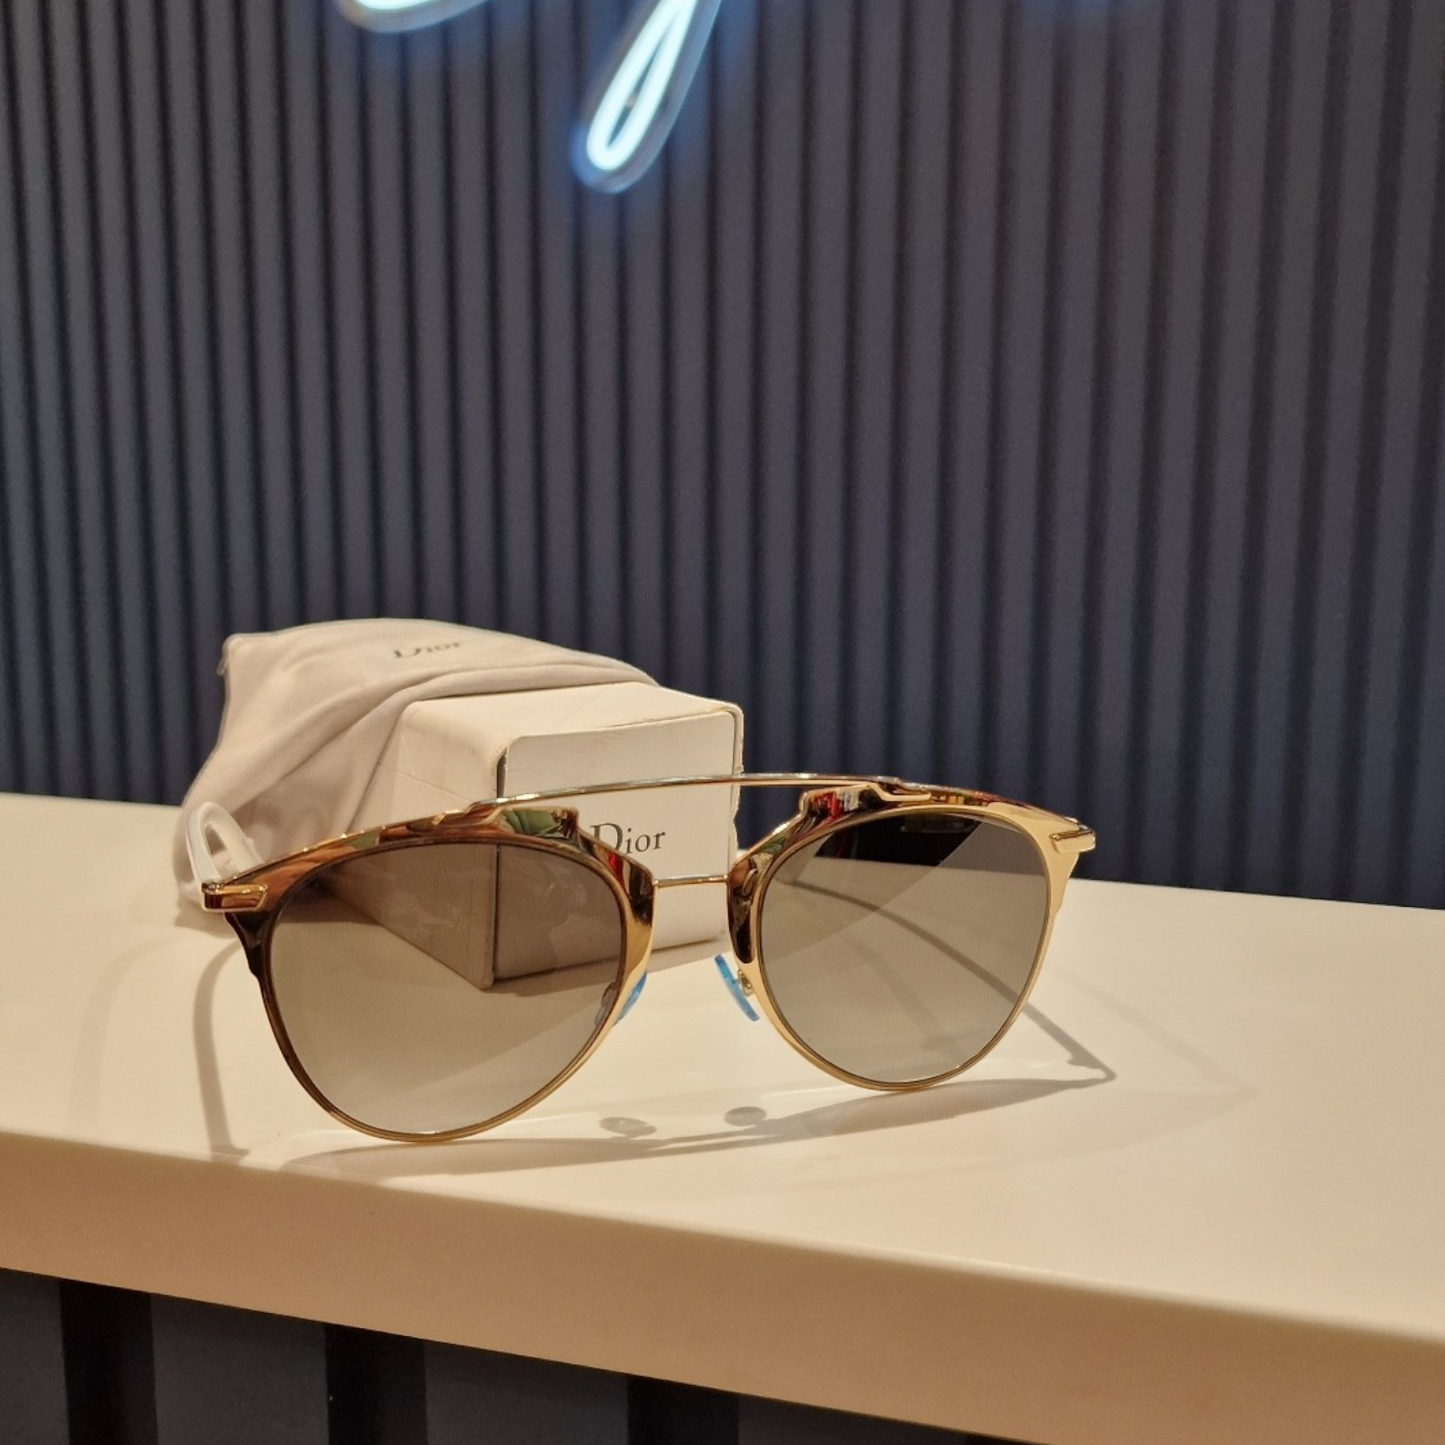 Dior Aviator Sunglasses, white, reflective lenses